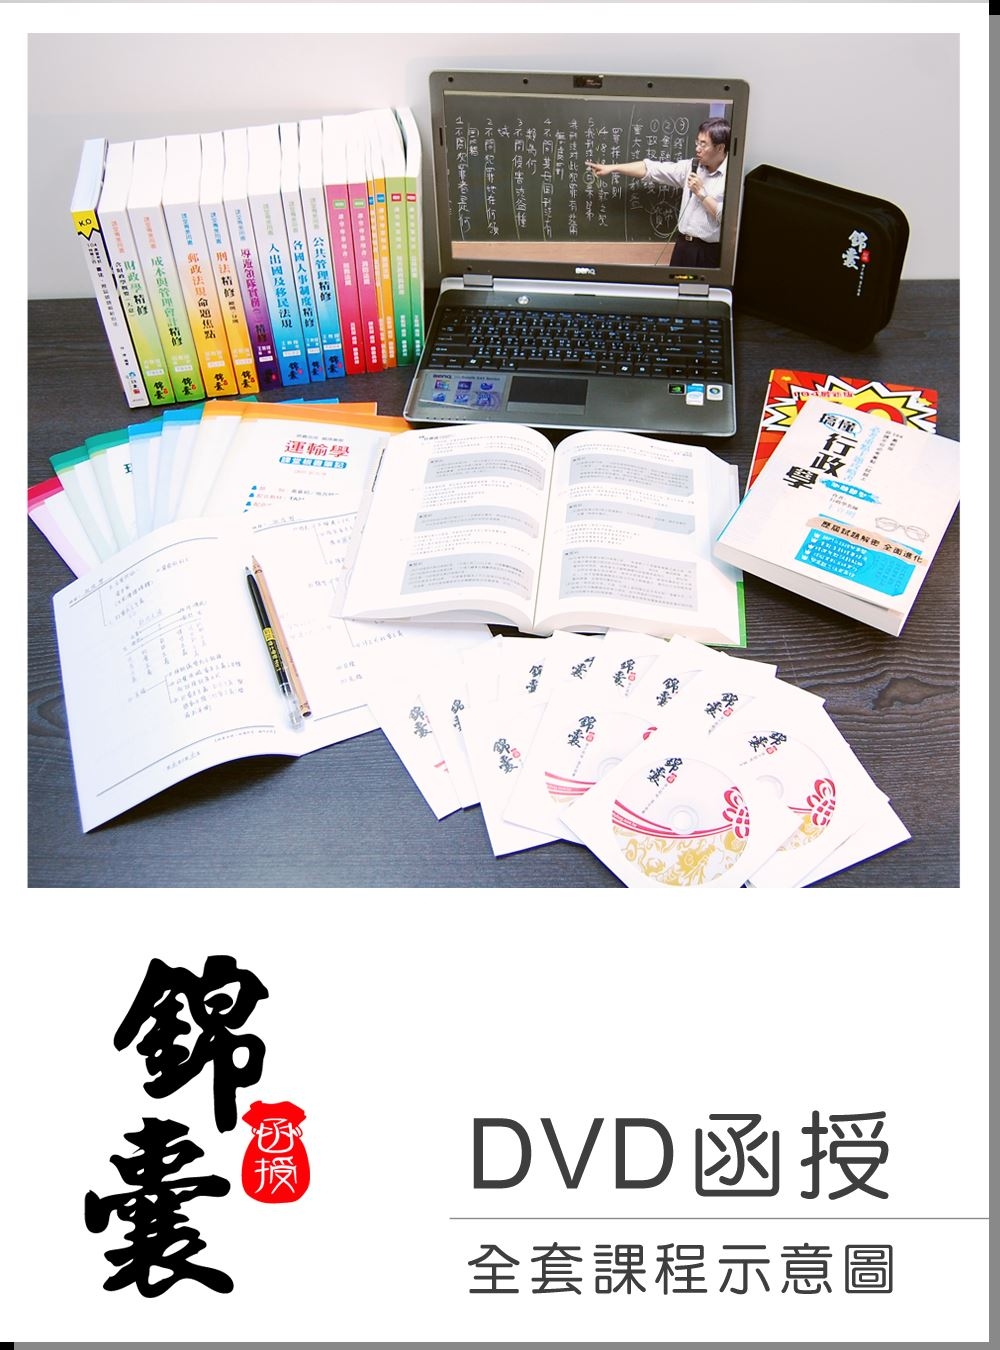 【DVD函授】租稅申報實務(正規+進階班) 單科課程(105版)